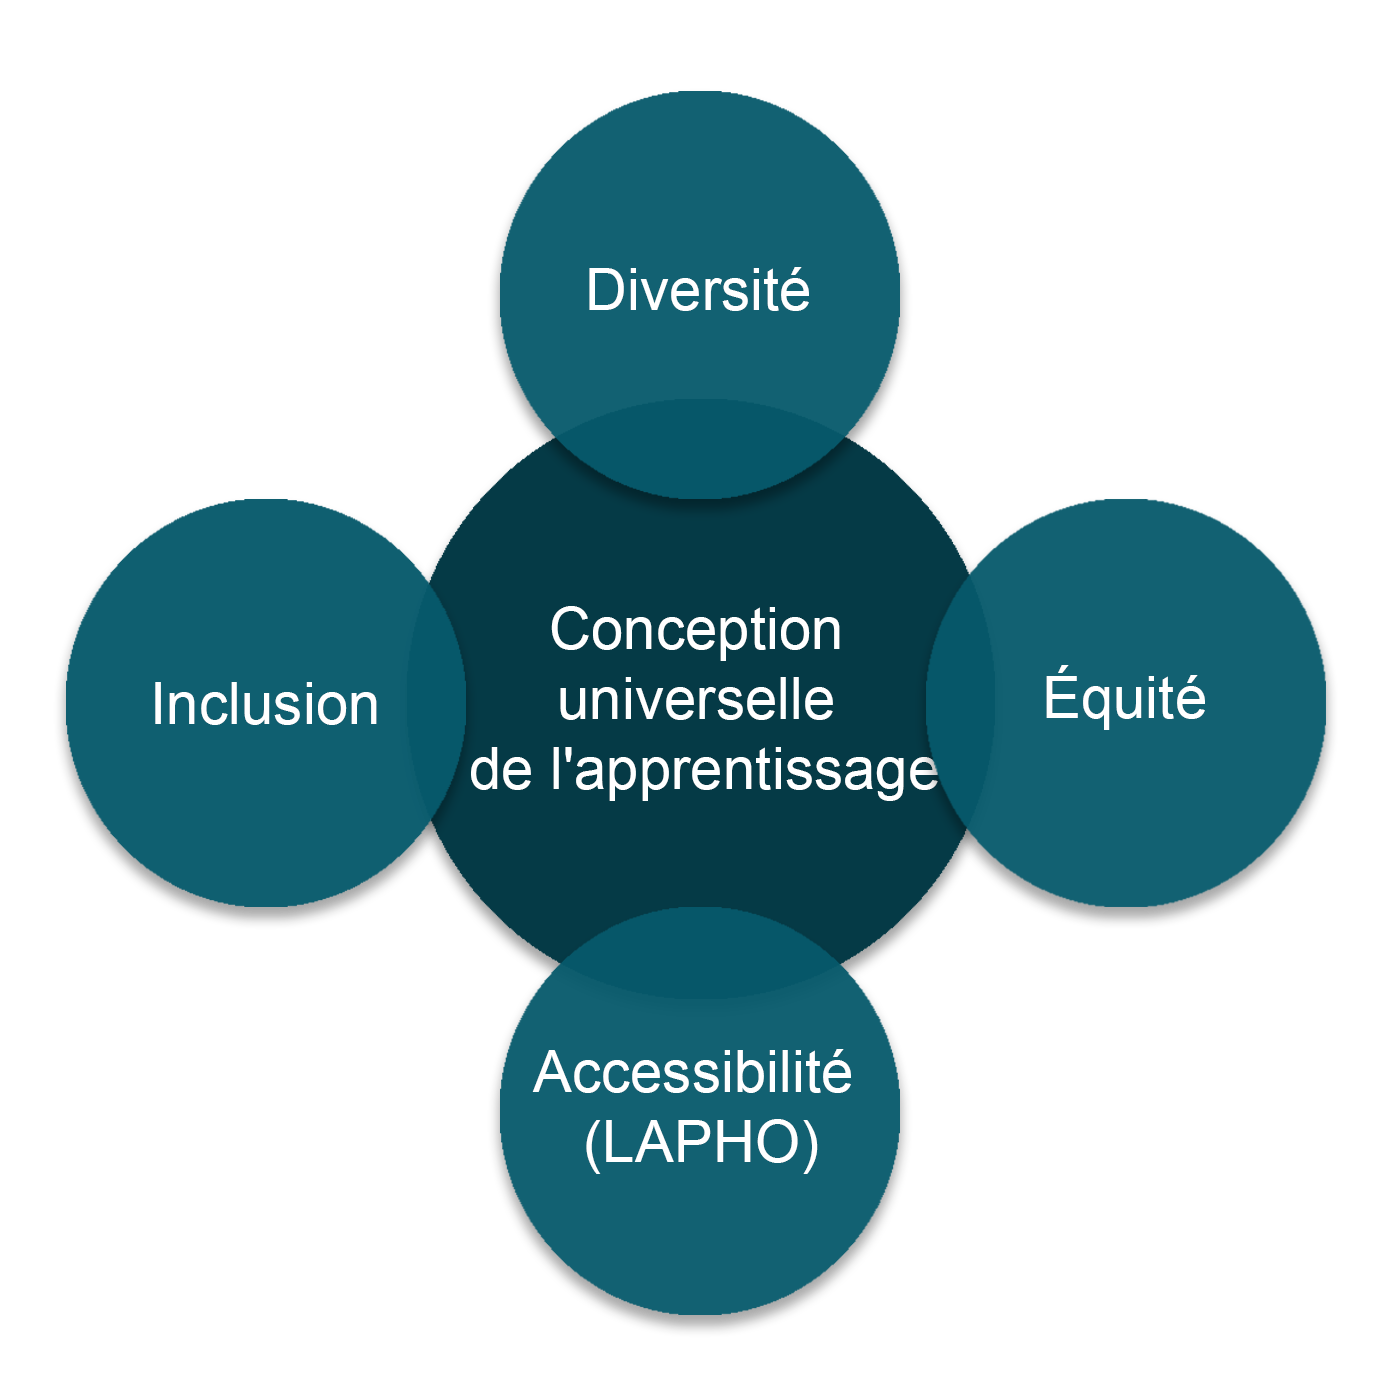 Diagramme de Venn montrant la conception universelle de l'apprentissage au centre et quatre cercles extérieurs qui se chevauchent étiquetés : diversité, équité, accessibilité (LAPHO) et inclusion.